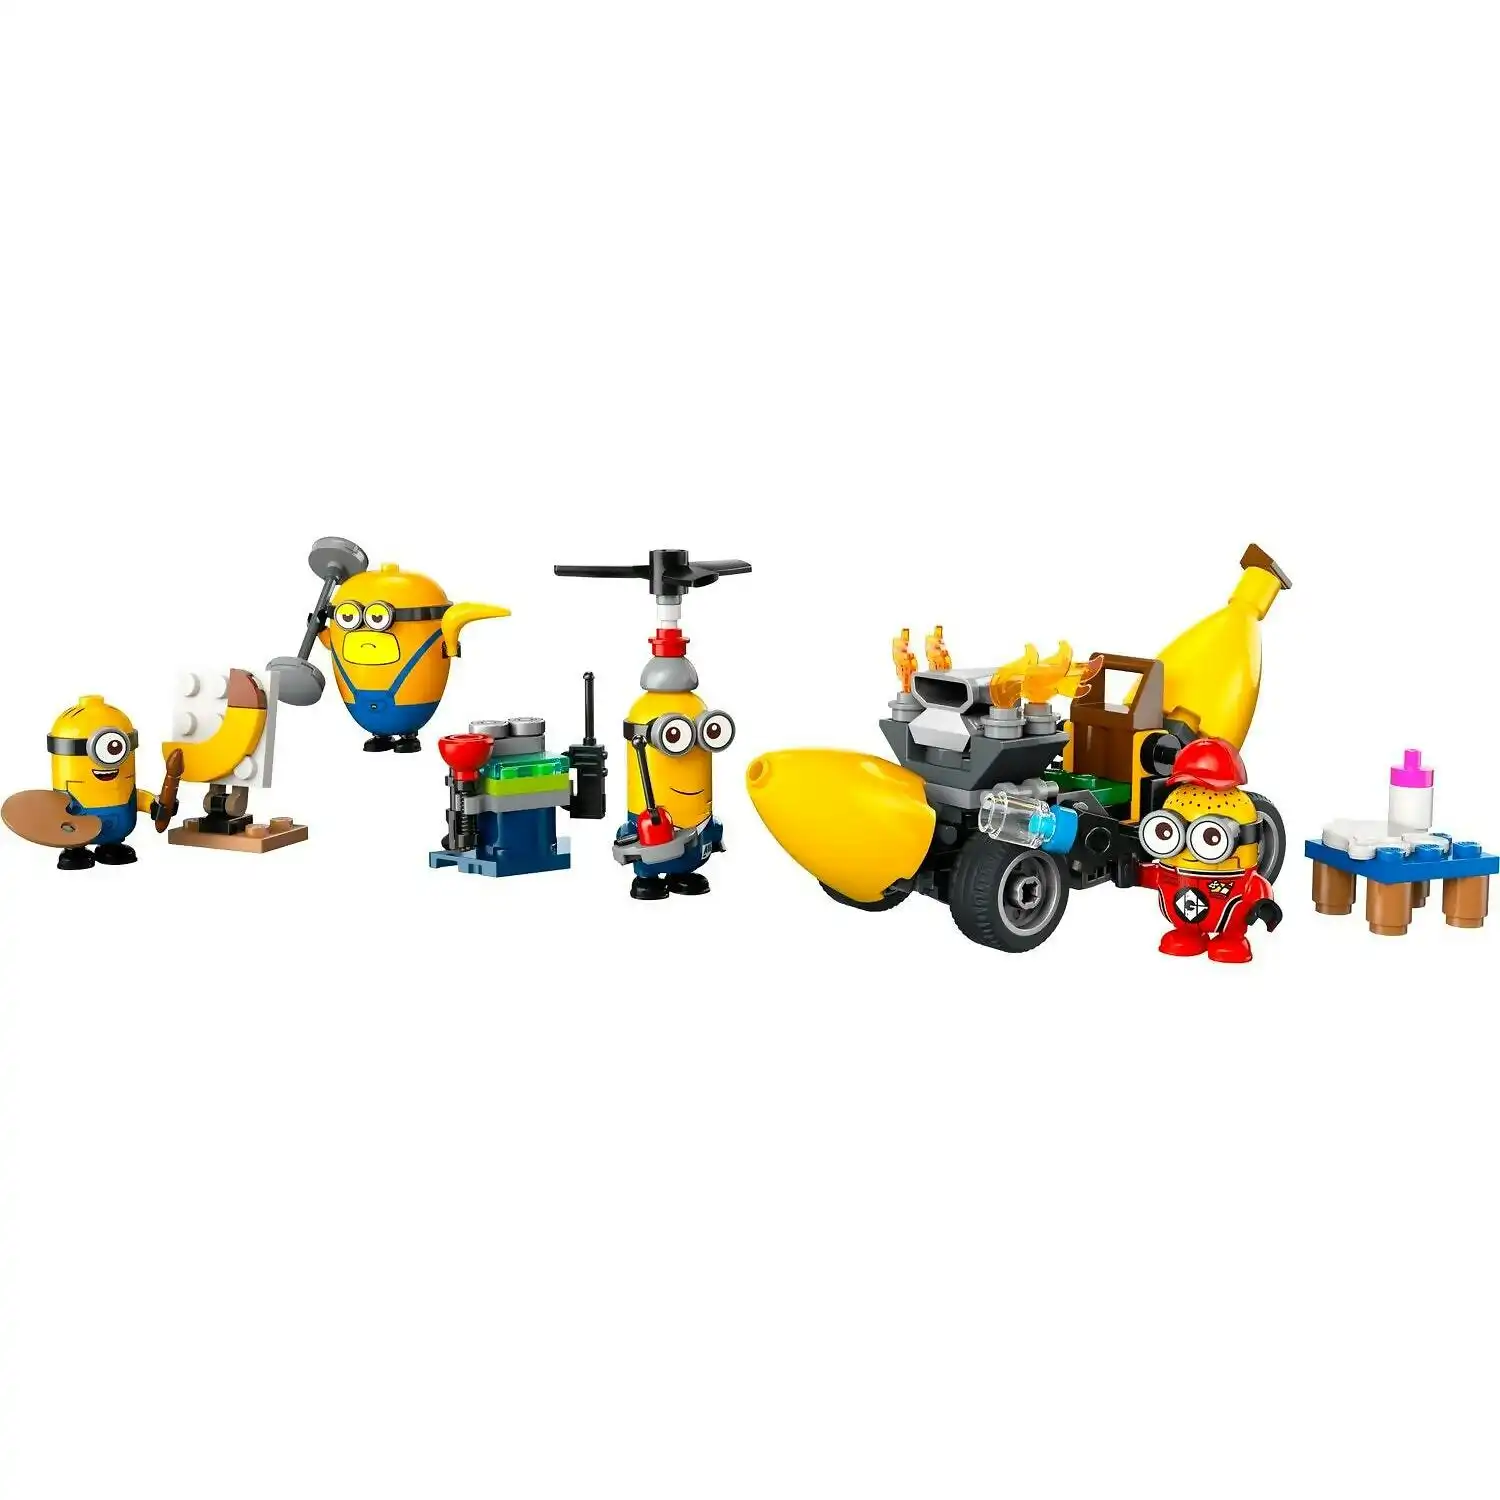 LEGO 75580 Minions and Banana Car - Despicable Me 4